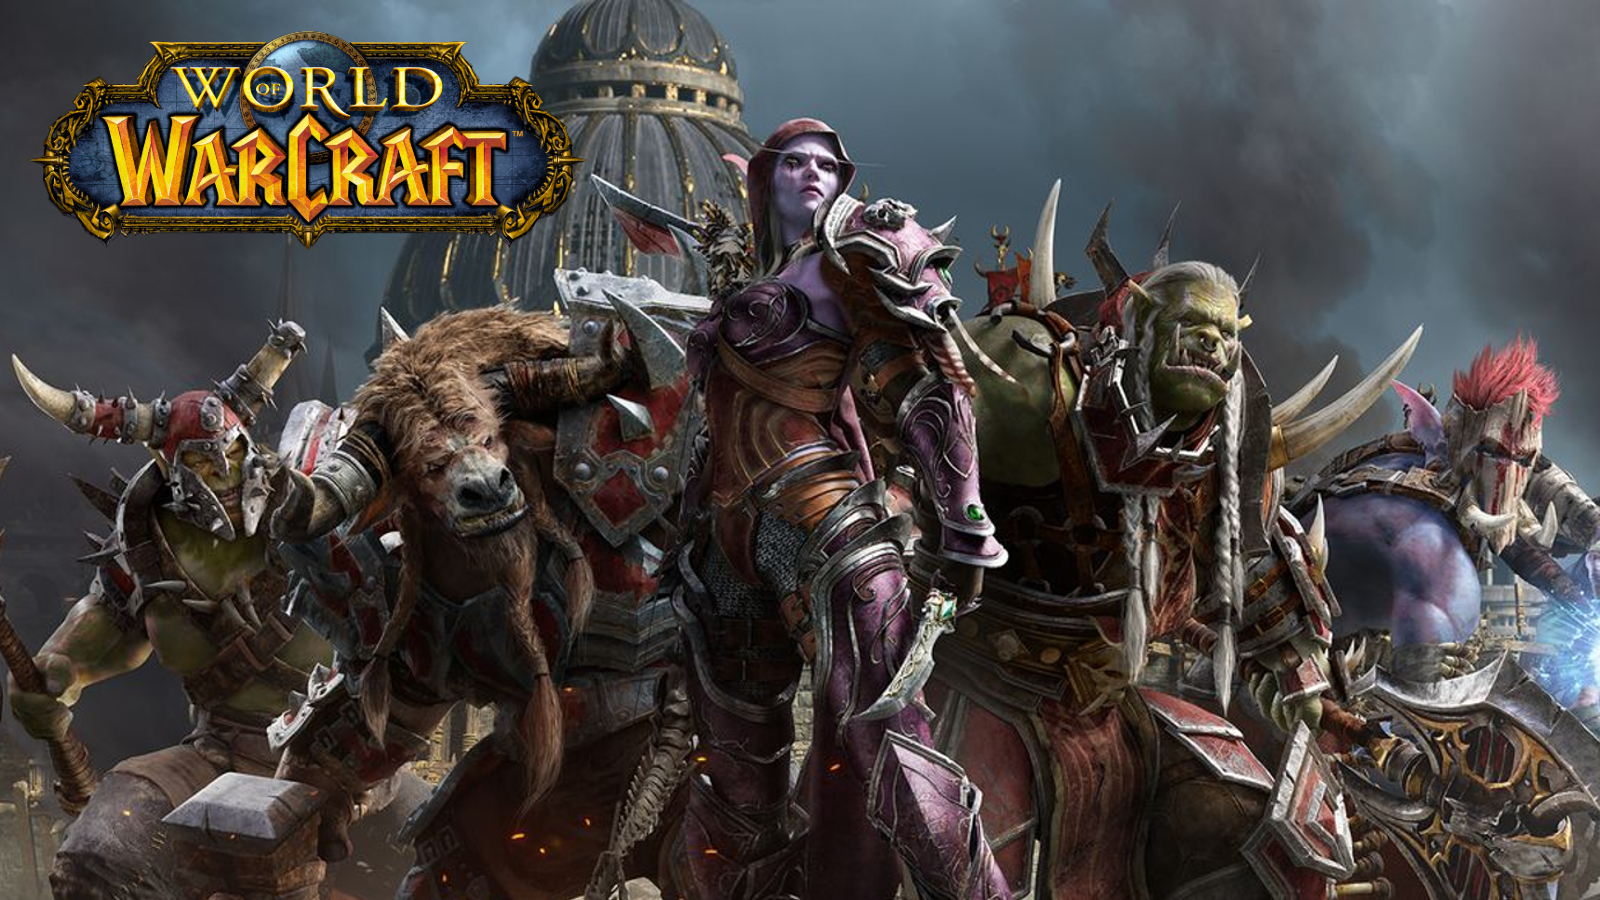 Gracze World of Warcraft zajmują kolejne stanowisko przeciwko toksyczności po teście umowy społecznej